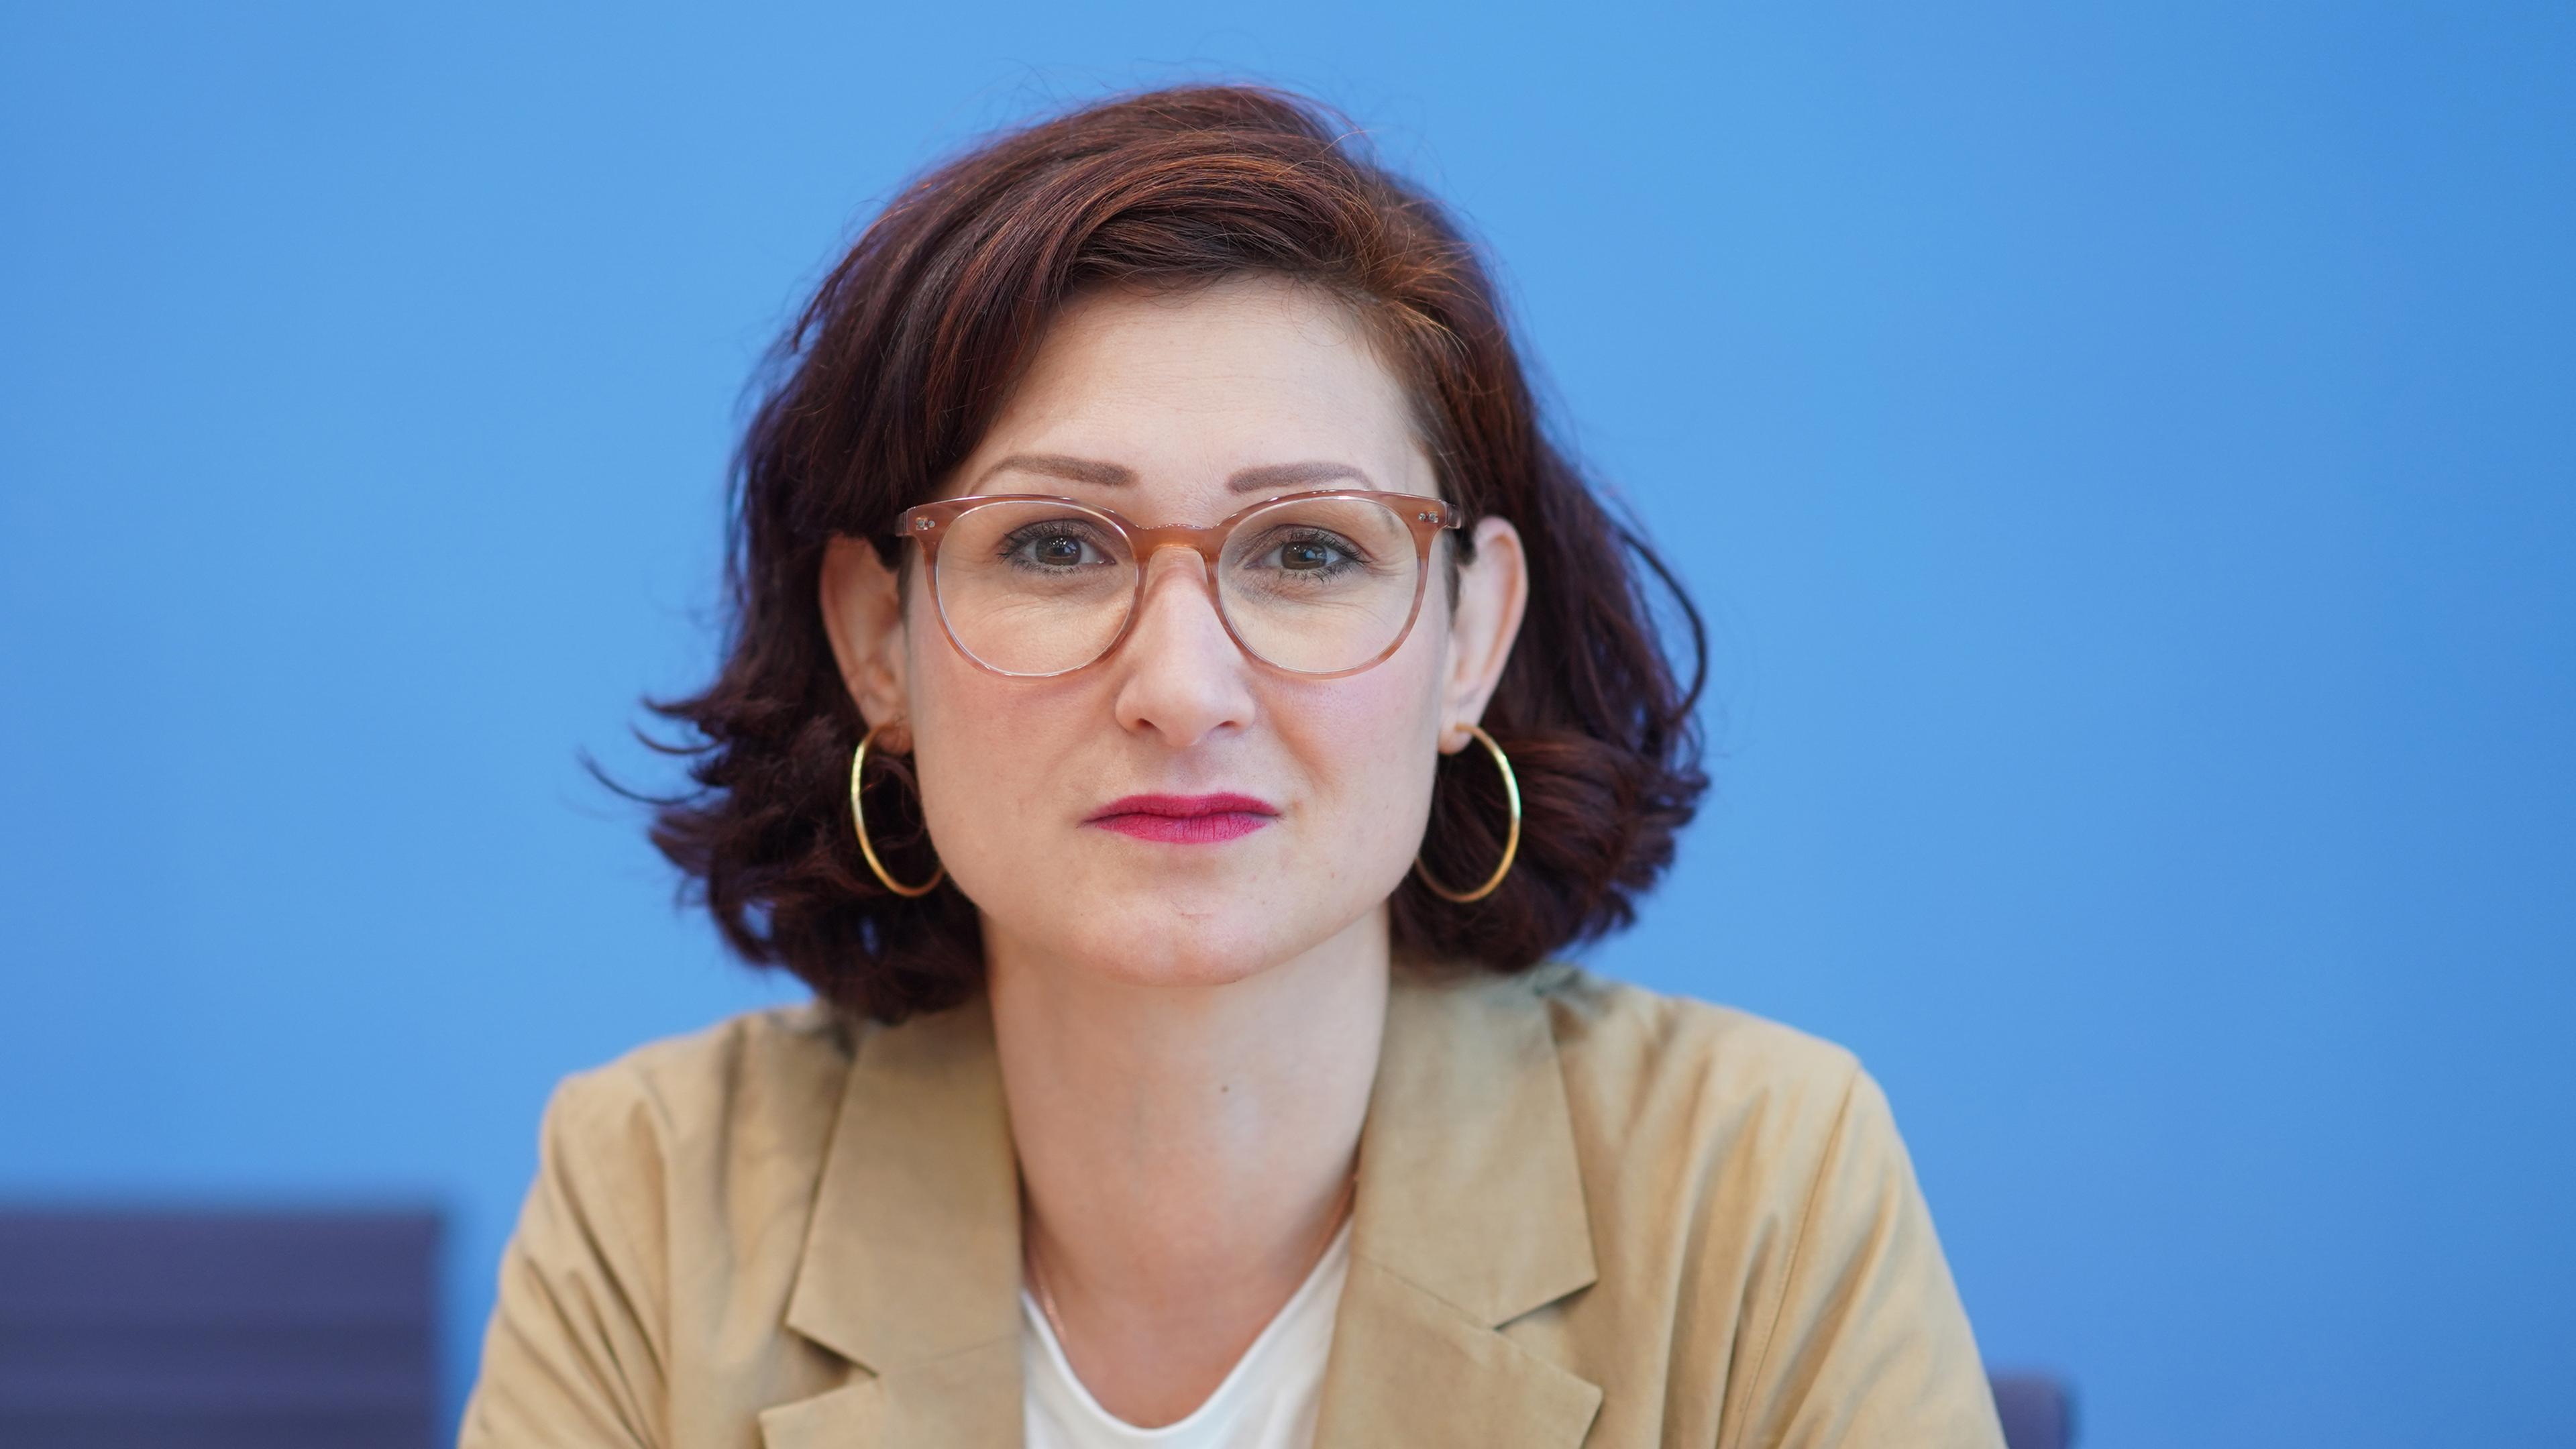 Ferda Ataman, Sprecherin neue deutsche Organisationen e.V., kommt zur Pressekonferenz zum Anti-Rassismus Plan 2025 in die Bundespressekonferenz.